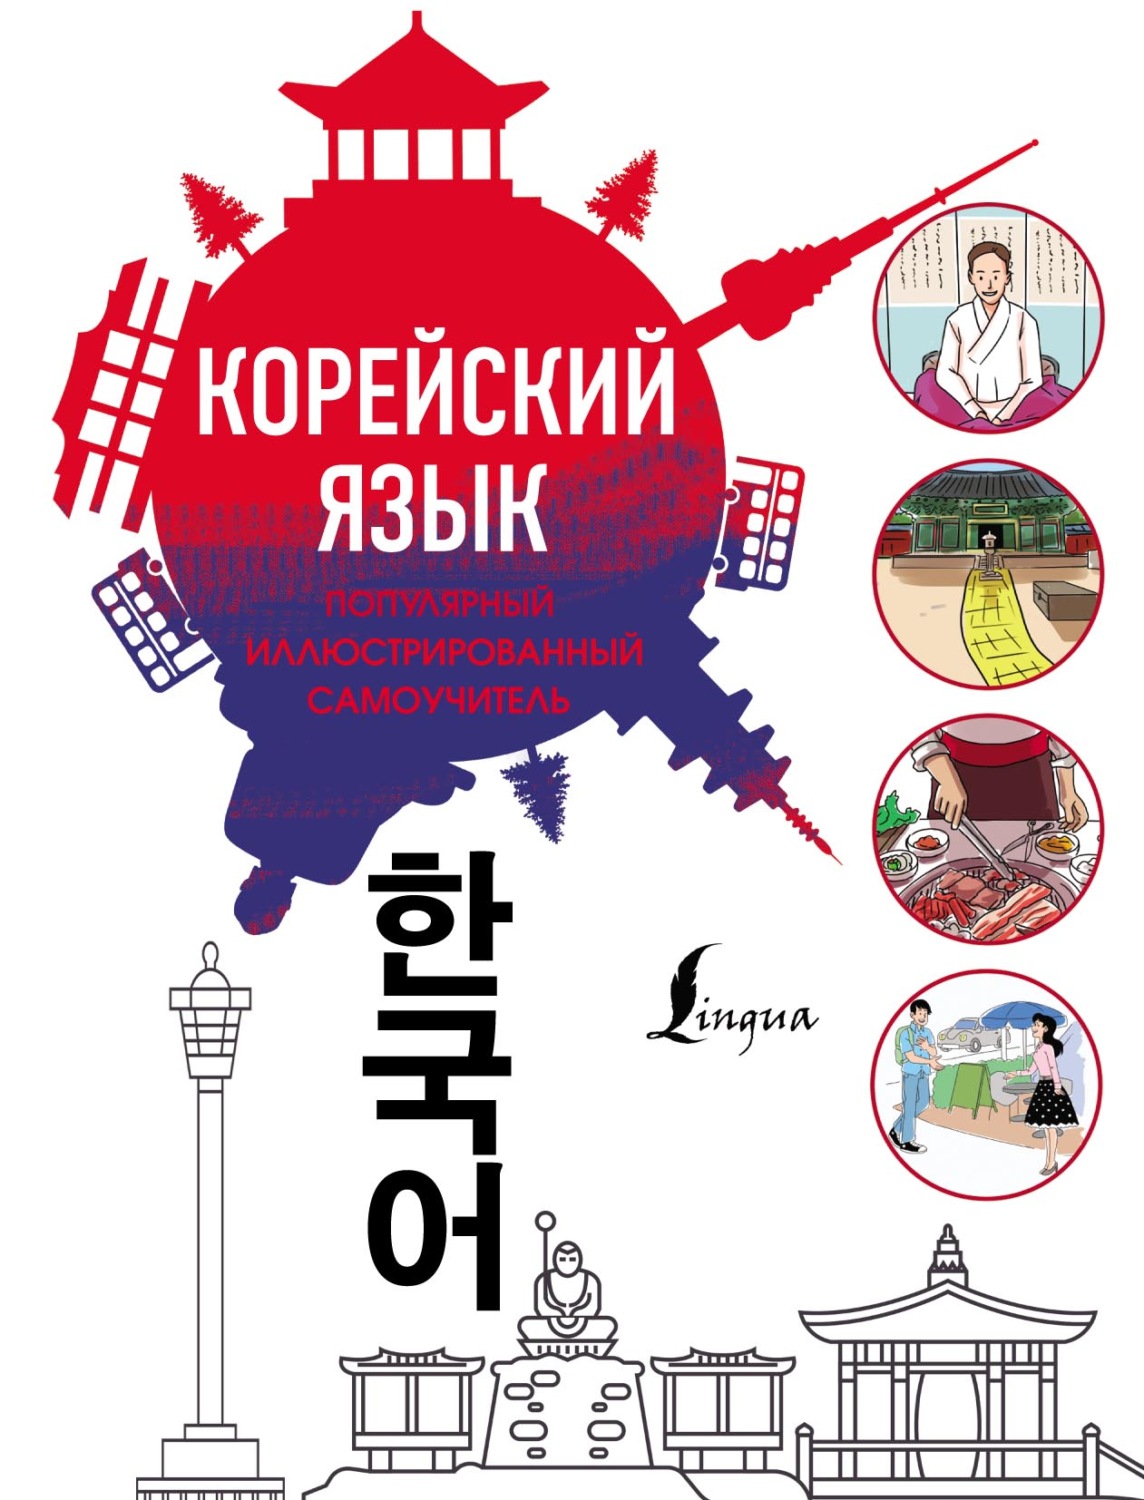 Перевод с корейского на русский по фото онлайн бесплатно без регистрации на русском языке